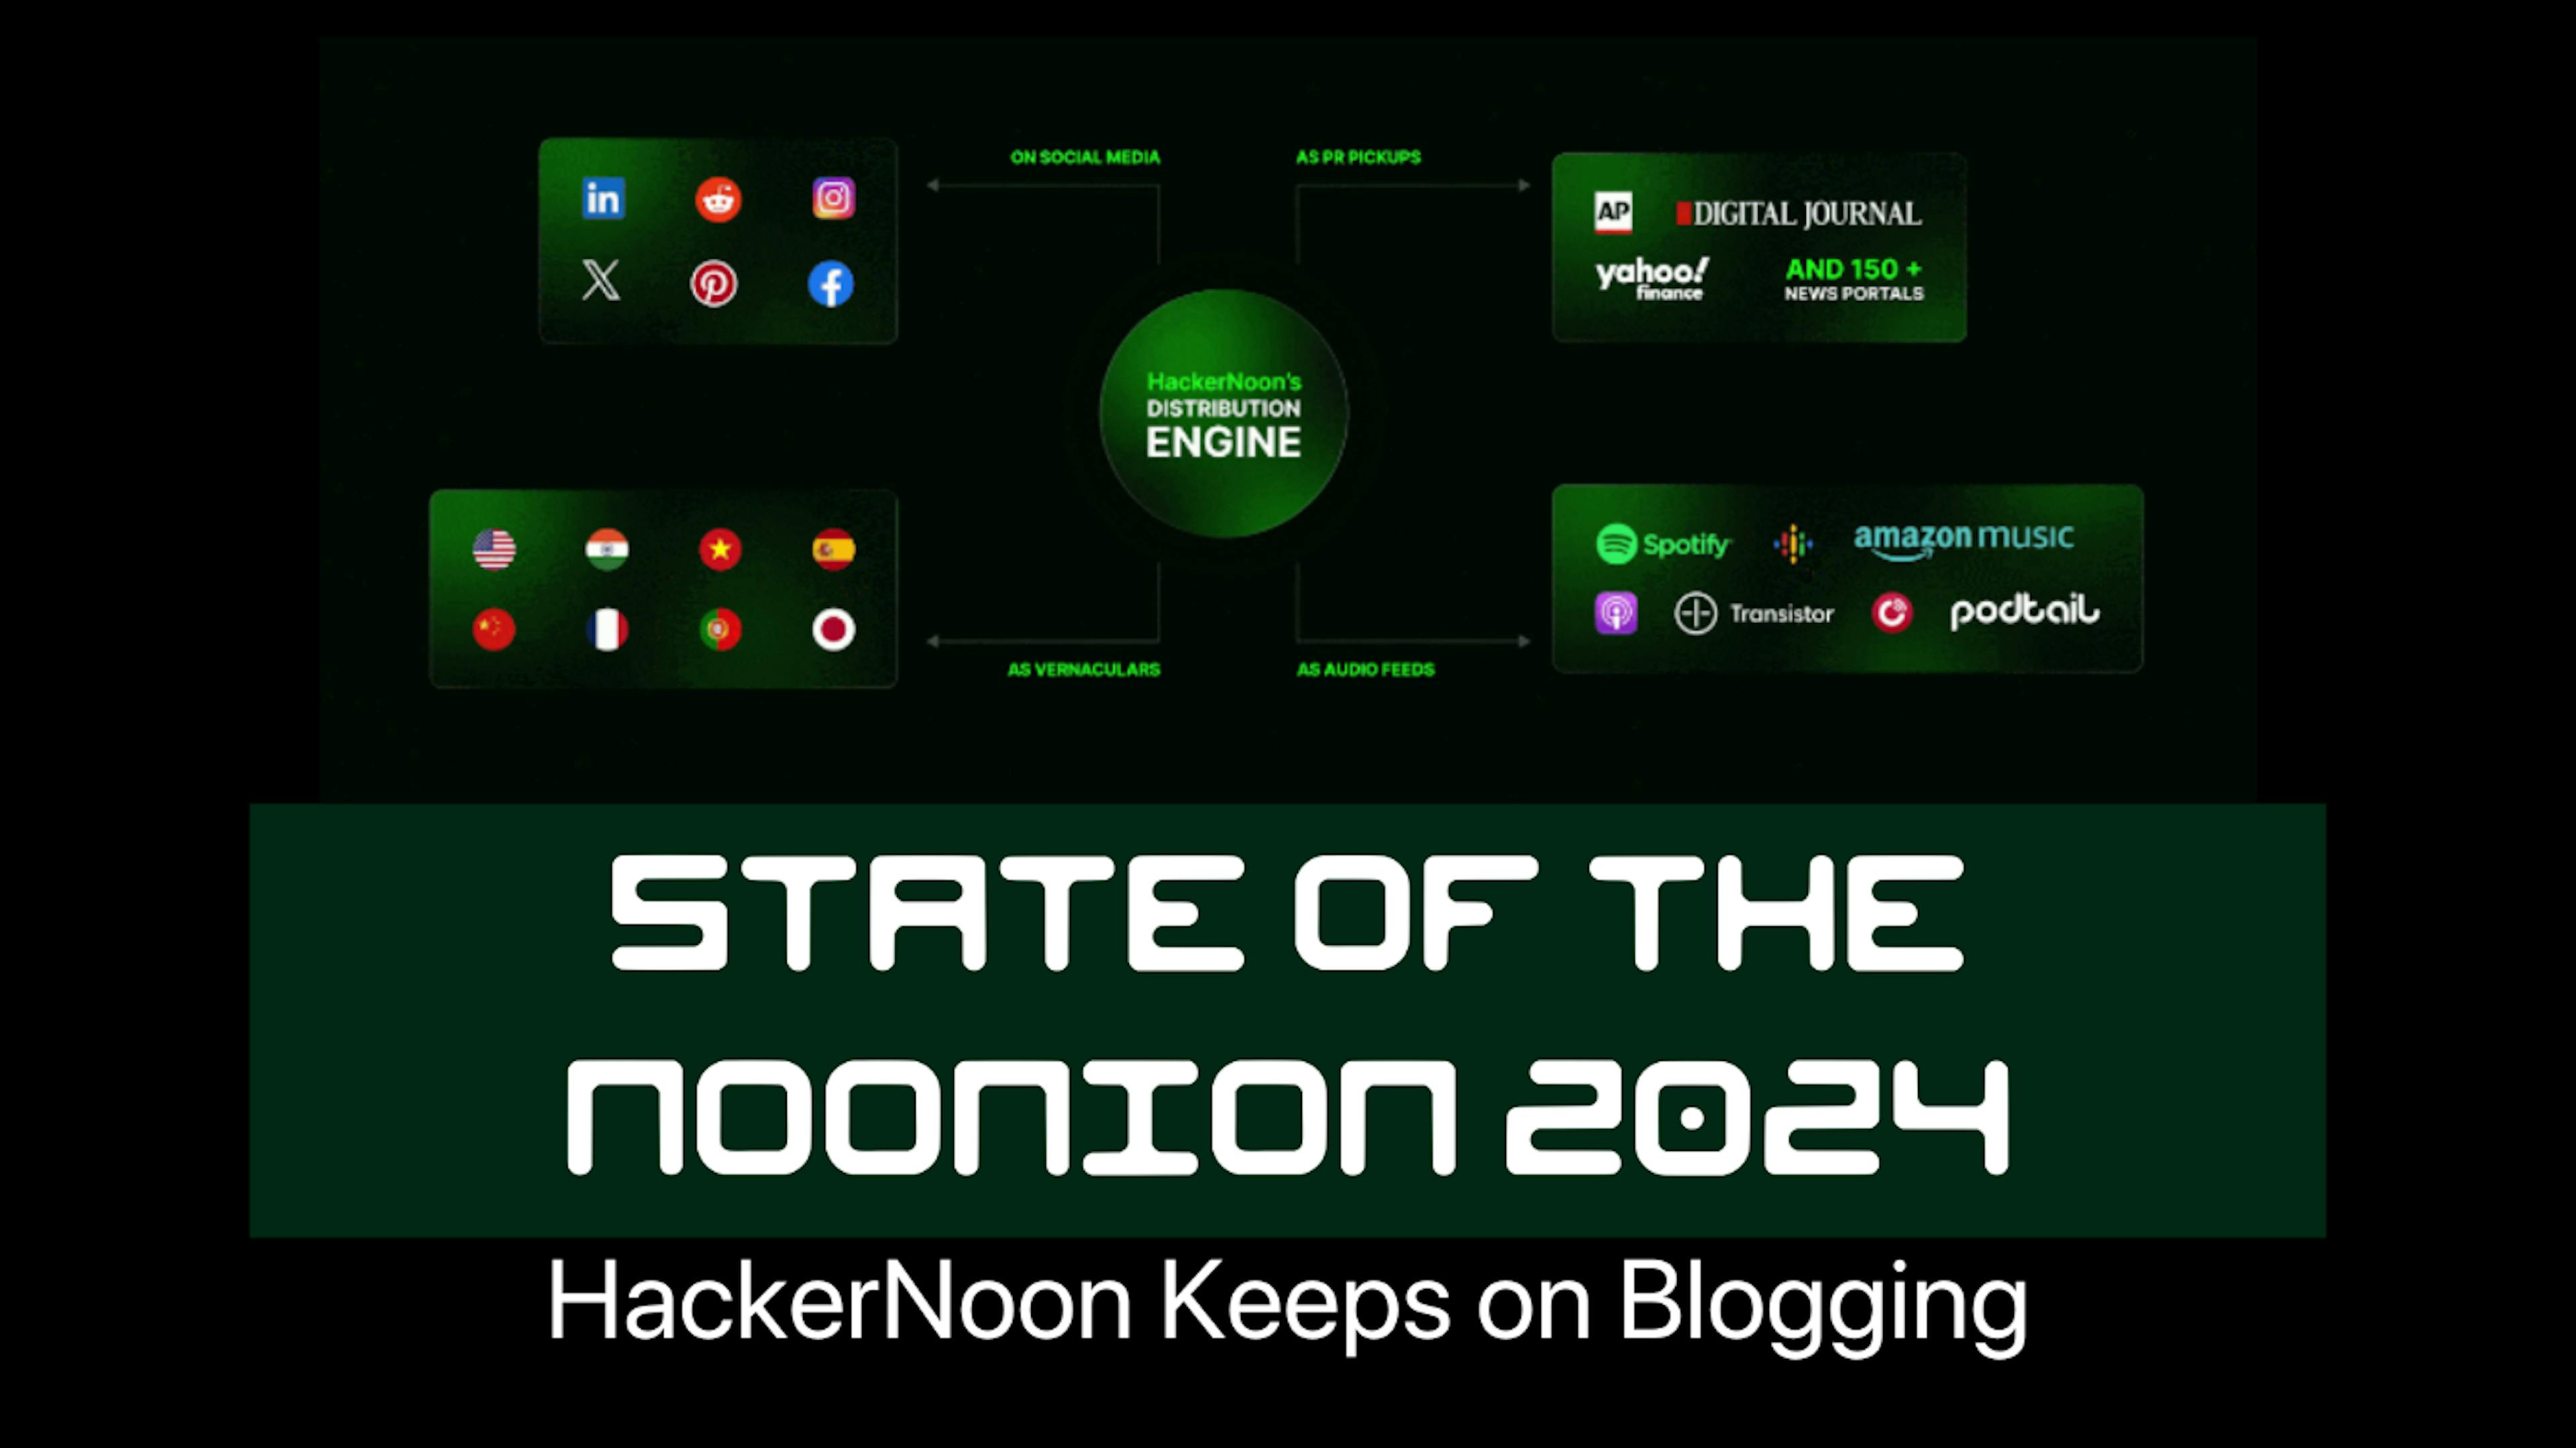 featured image - Stand der Noonion 2024: HackerNoon bloggt weiter